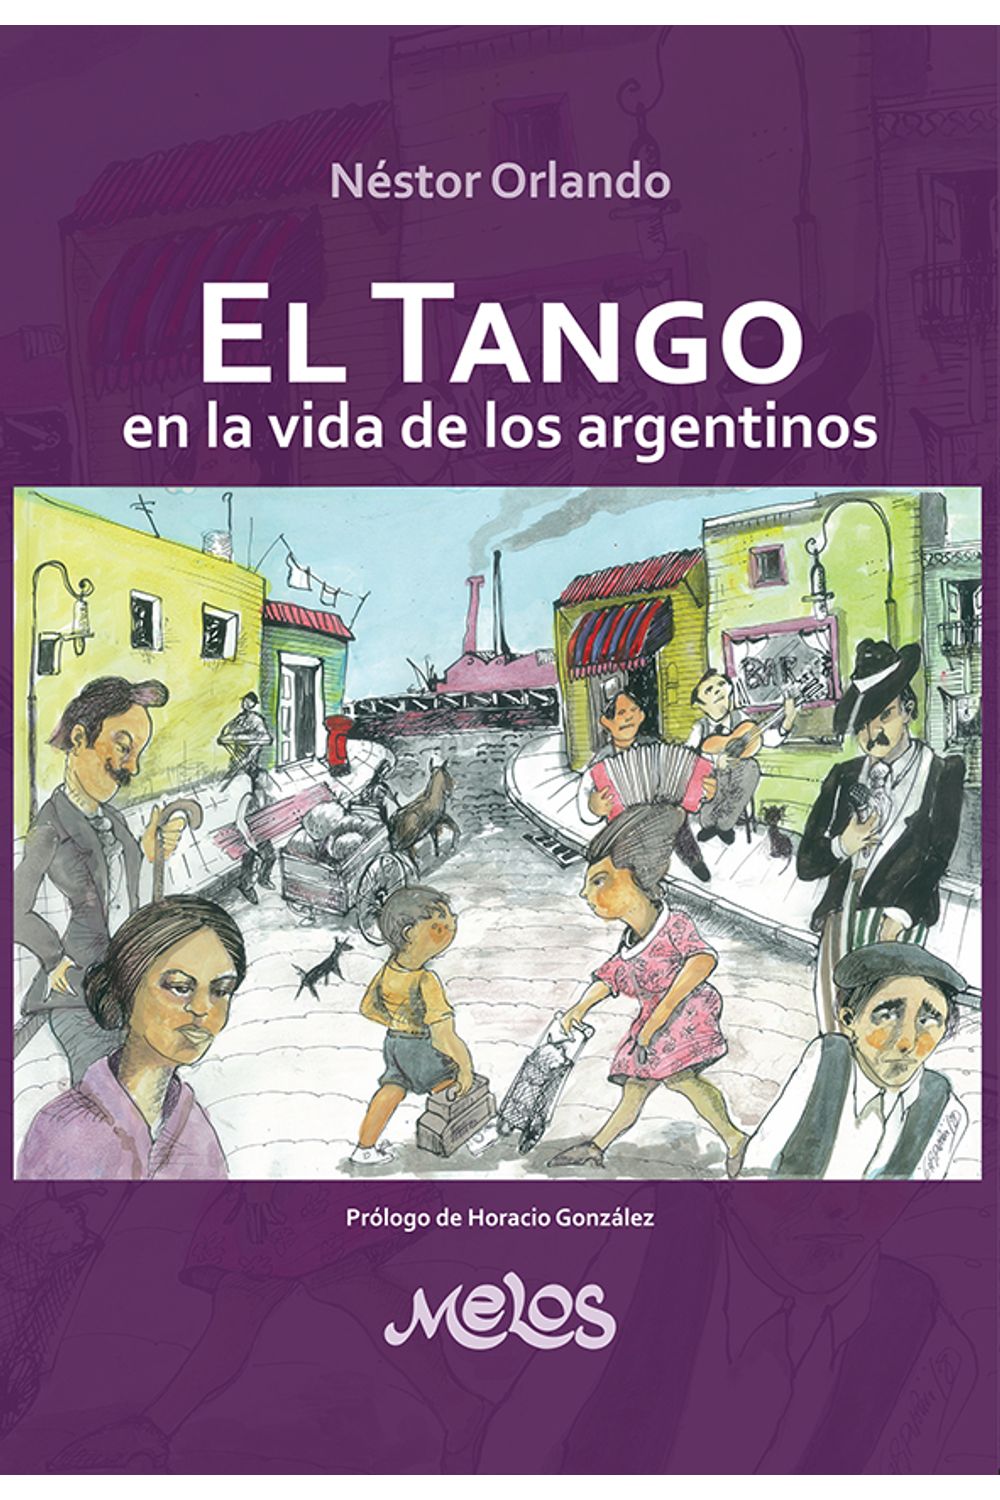 bm-mel2010-el-tango-en-la-vida-de-los-argentinos-melos-ediciones-musicales-9789876114059